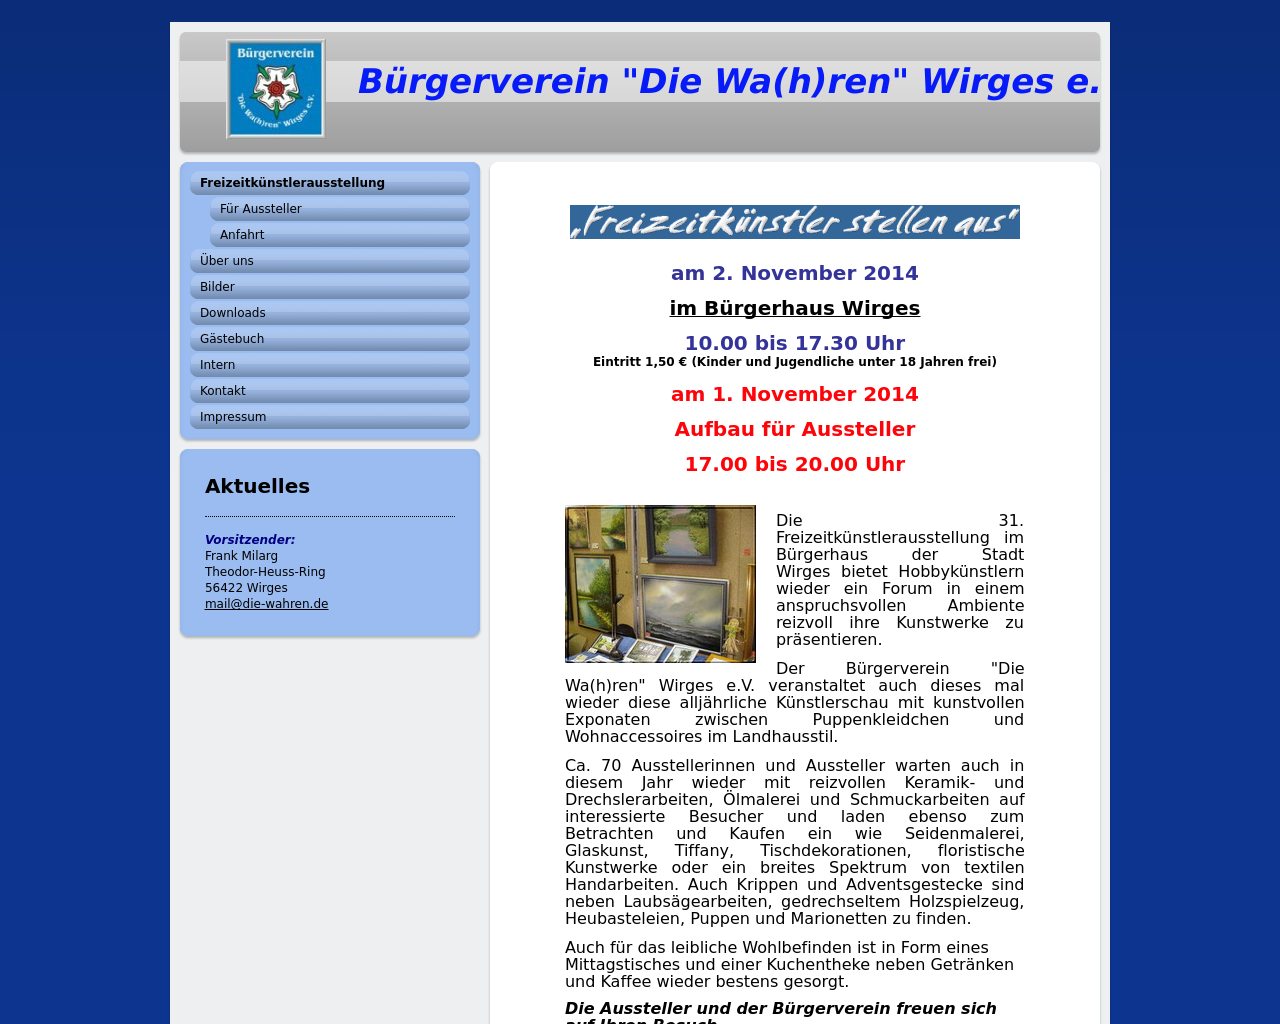 Bild Website die-wahren.de in 1280x1024